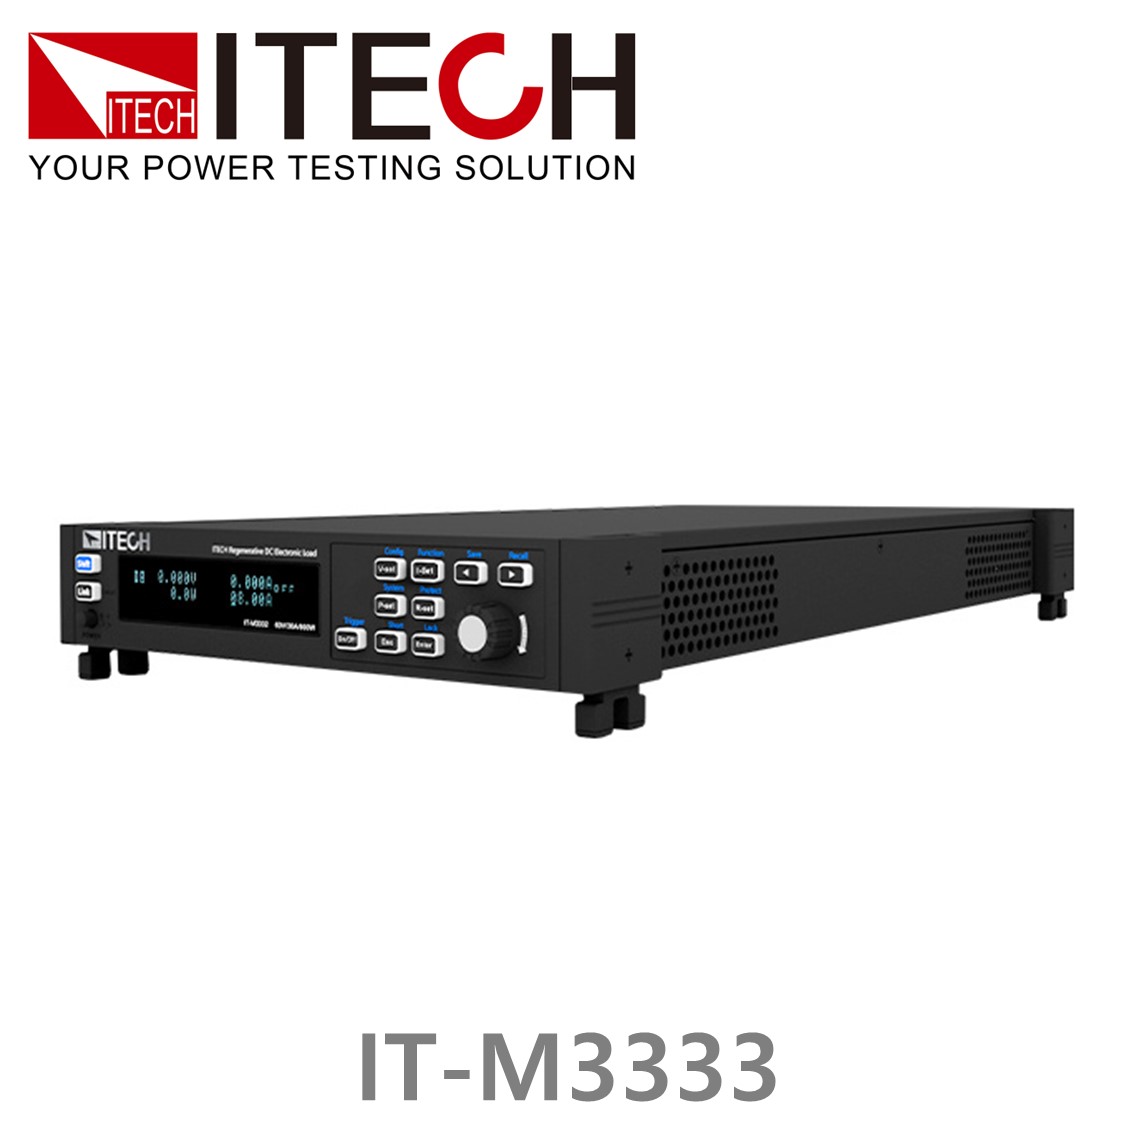 [ ITECH ] IT-M3333 DC전자부하기 (150V/12A/800W), DC전자로드